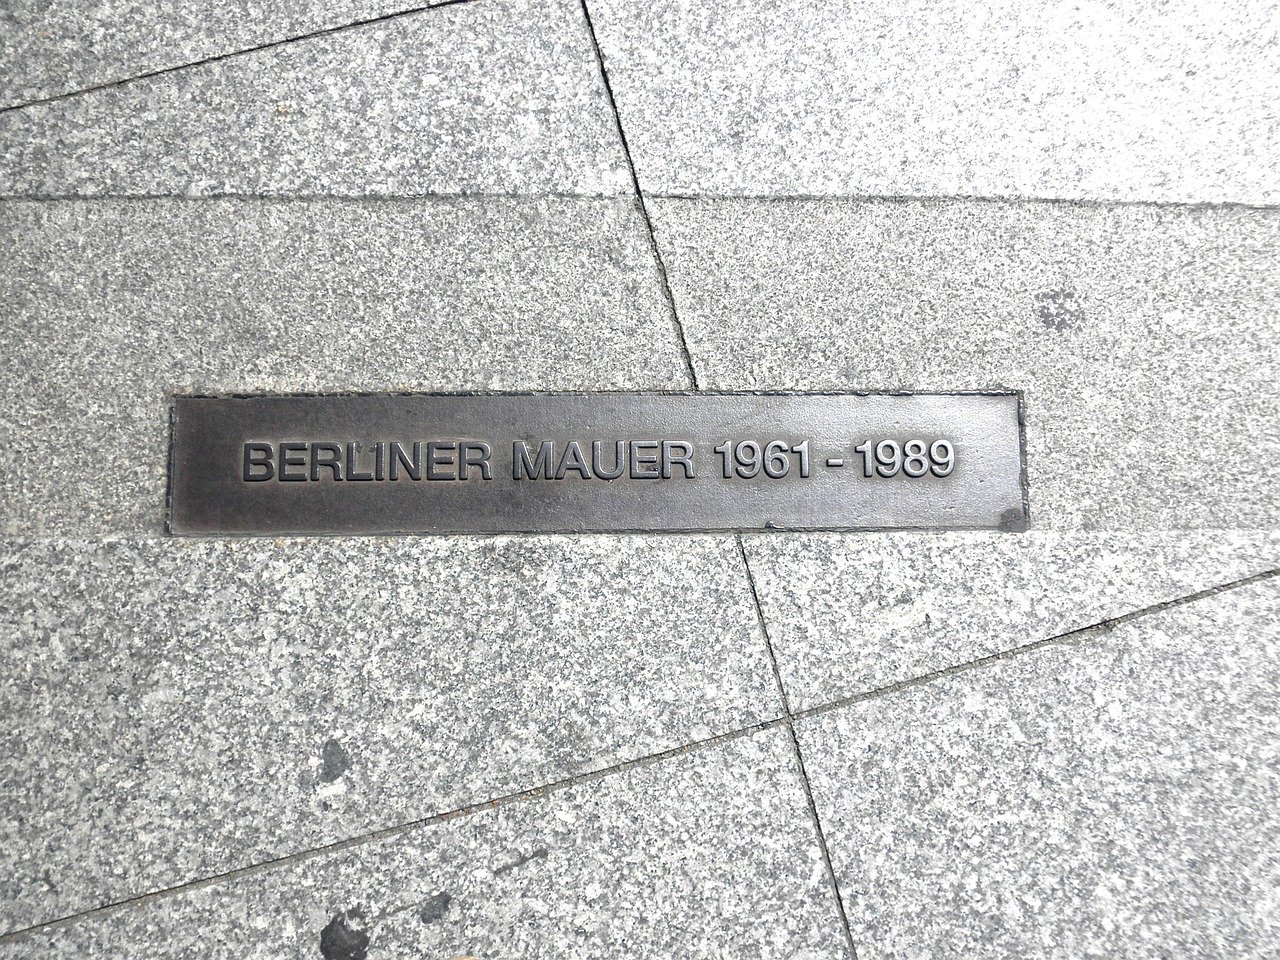 Gehwegplatten mit einer Metallplatte in der Mitte "Berliner Mauer 1961-1989"